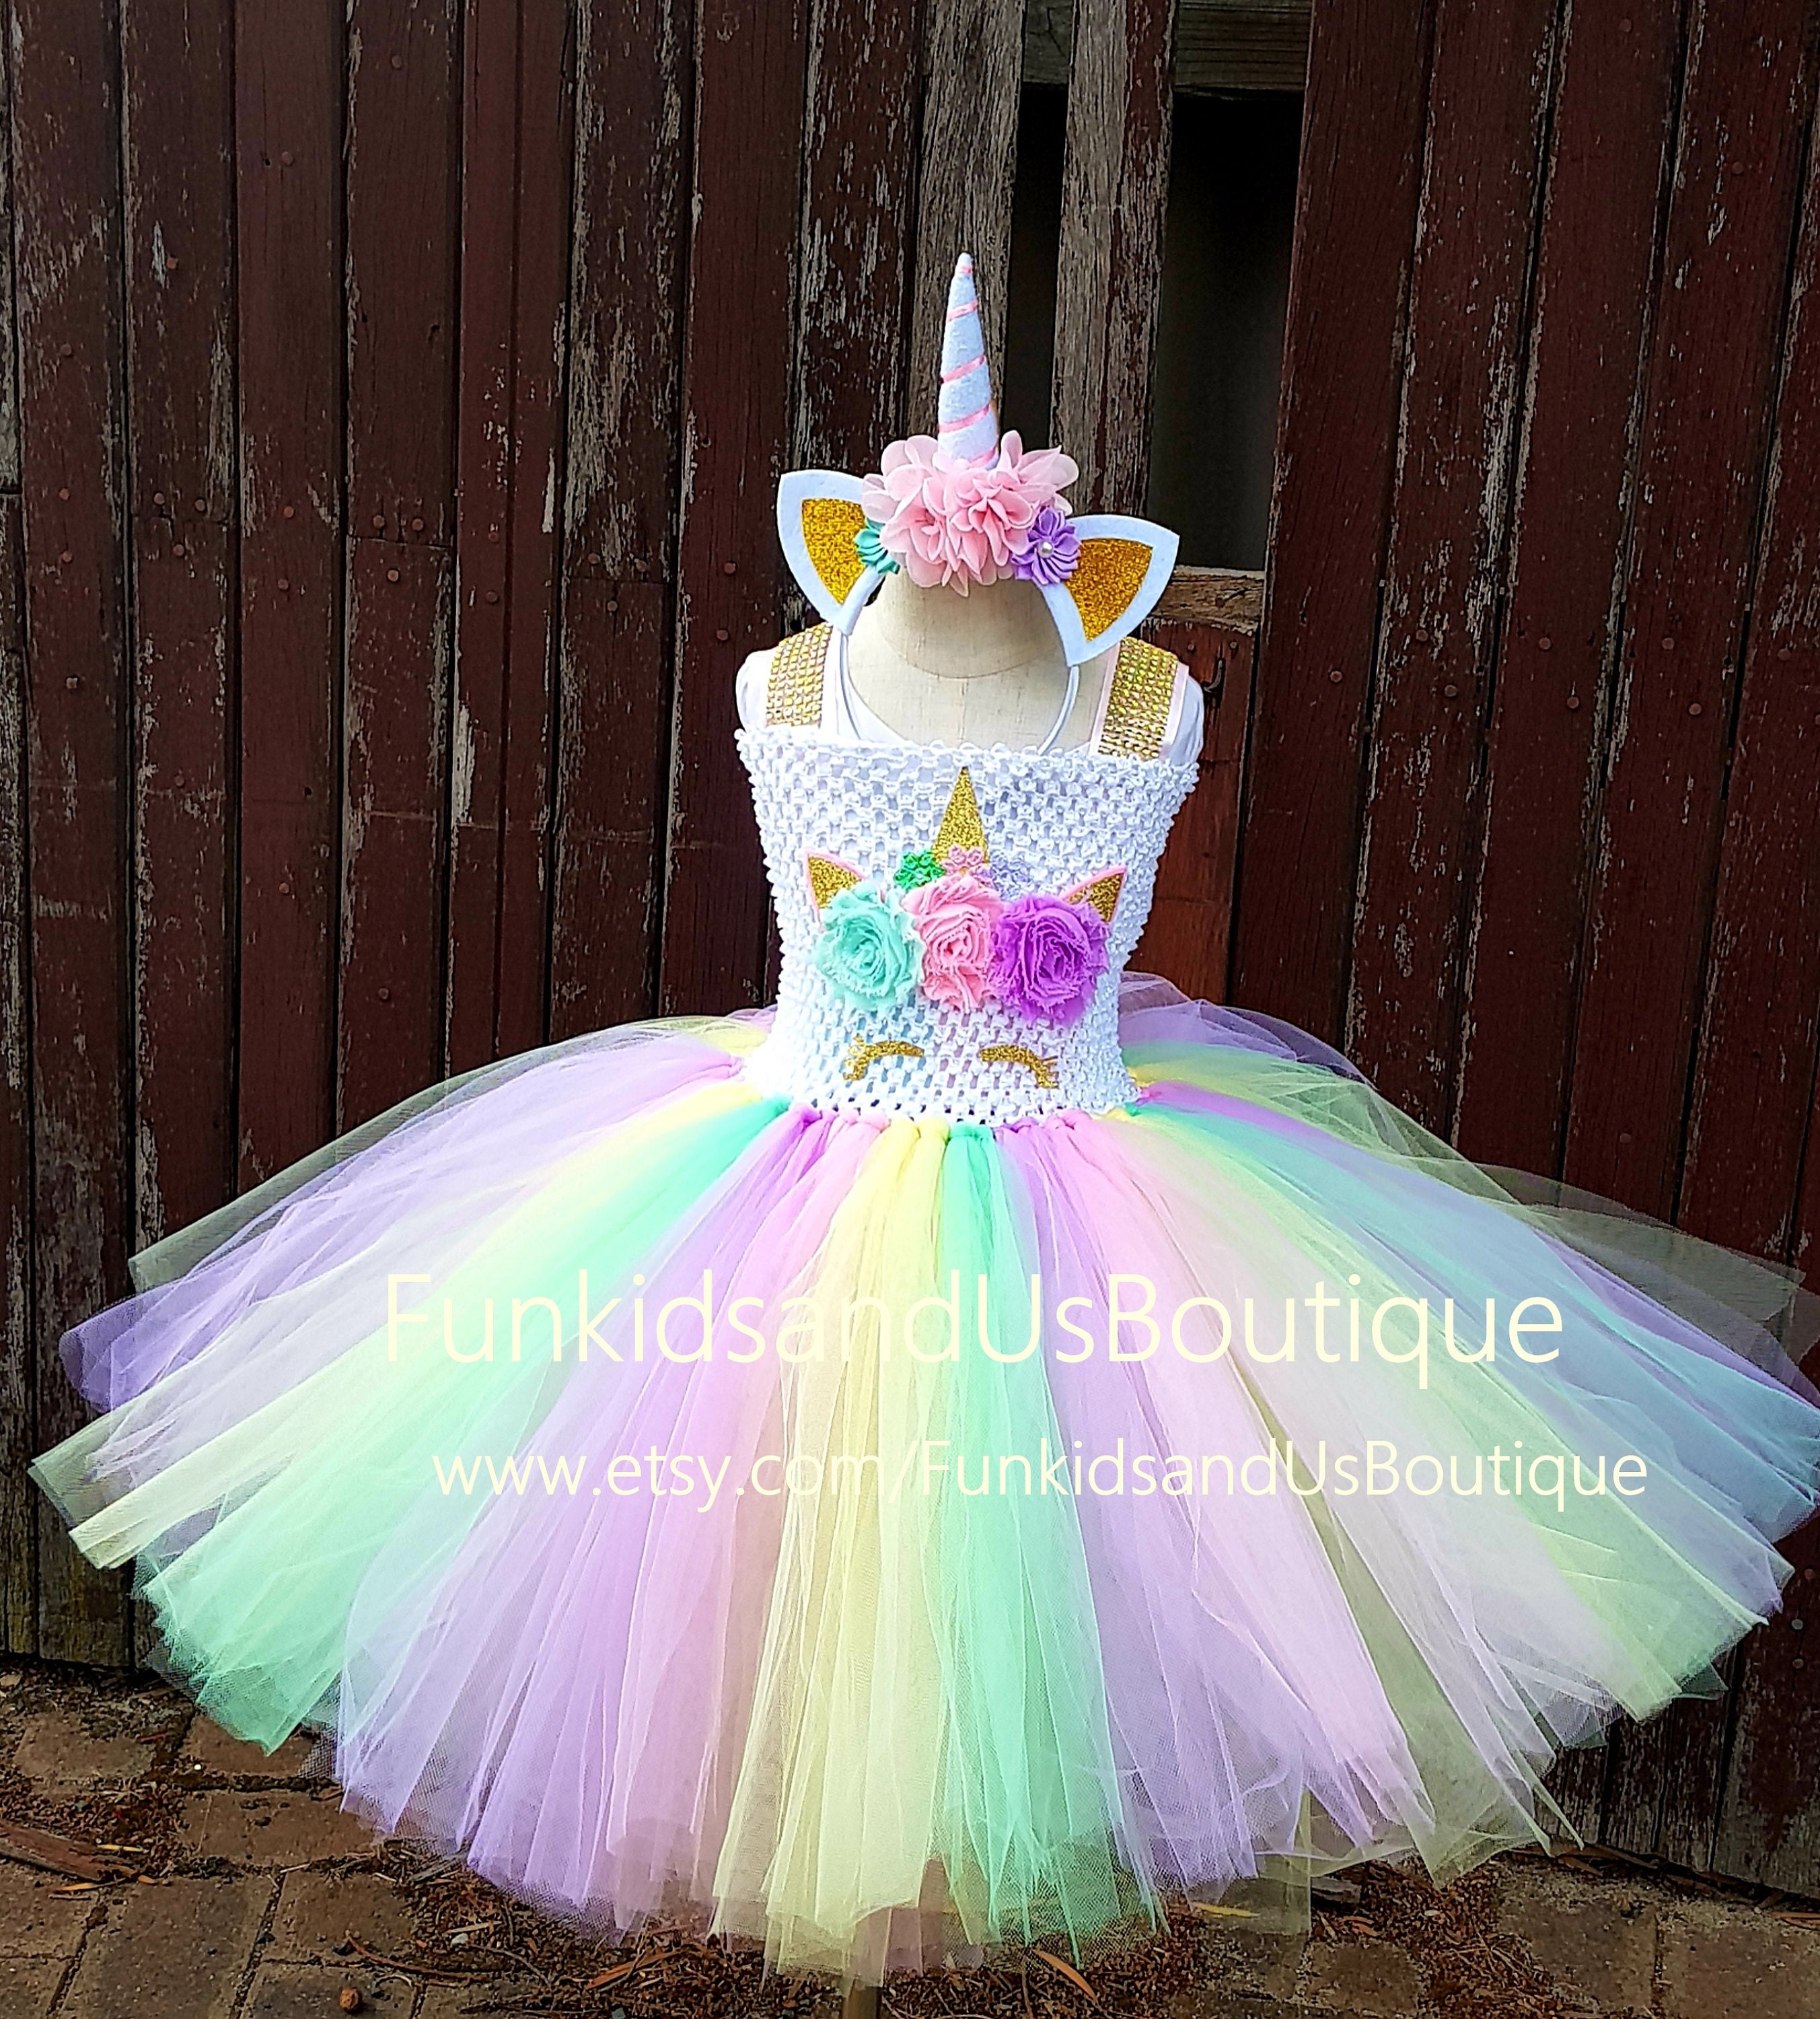 ZUCOS Costume de licorne pour fille avec lumières - Robe tutu - Rob